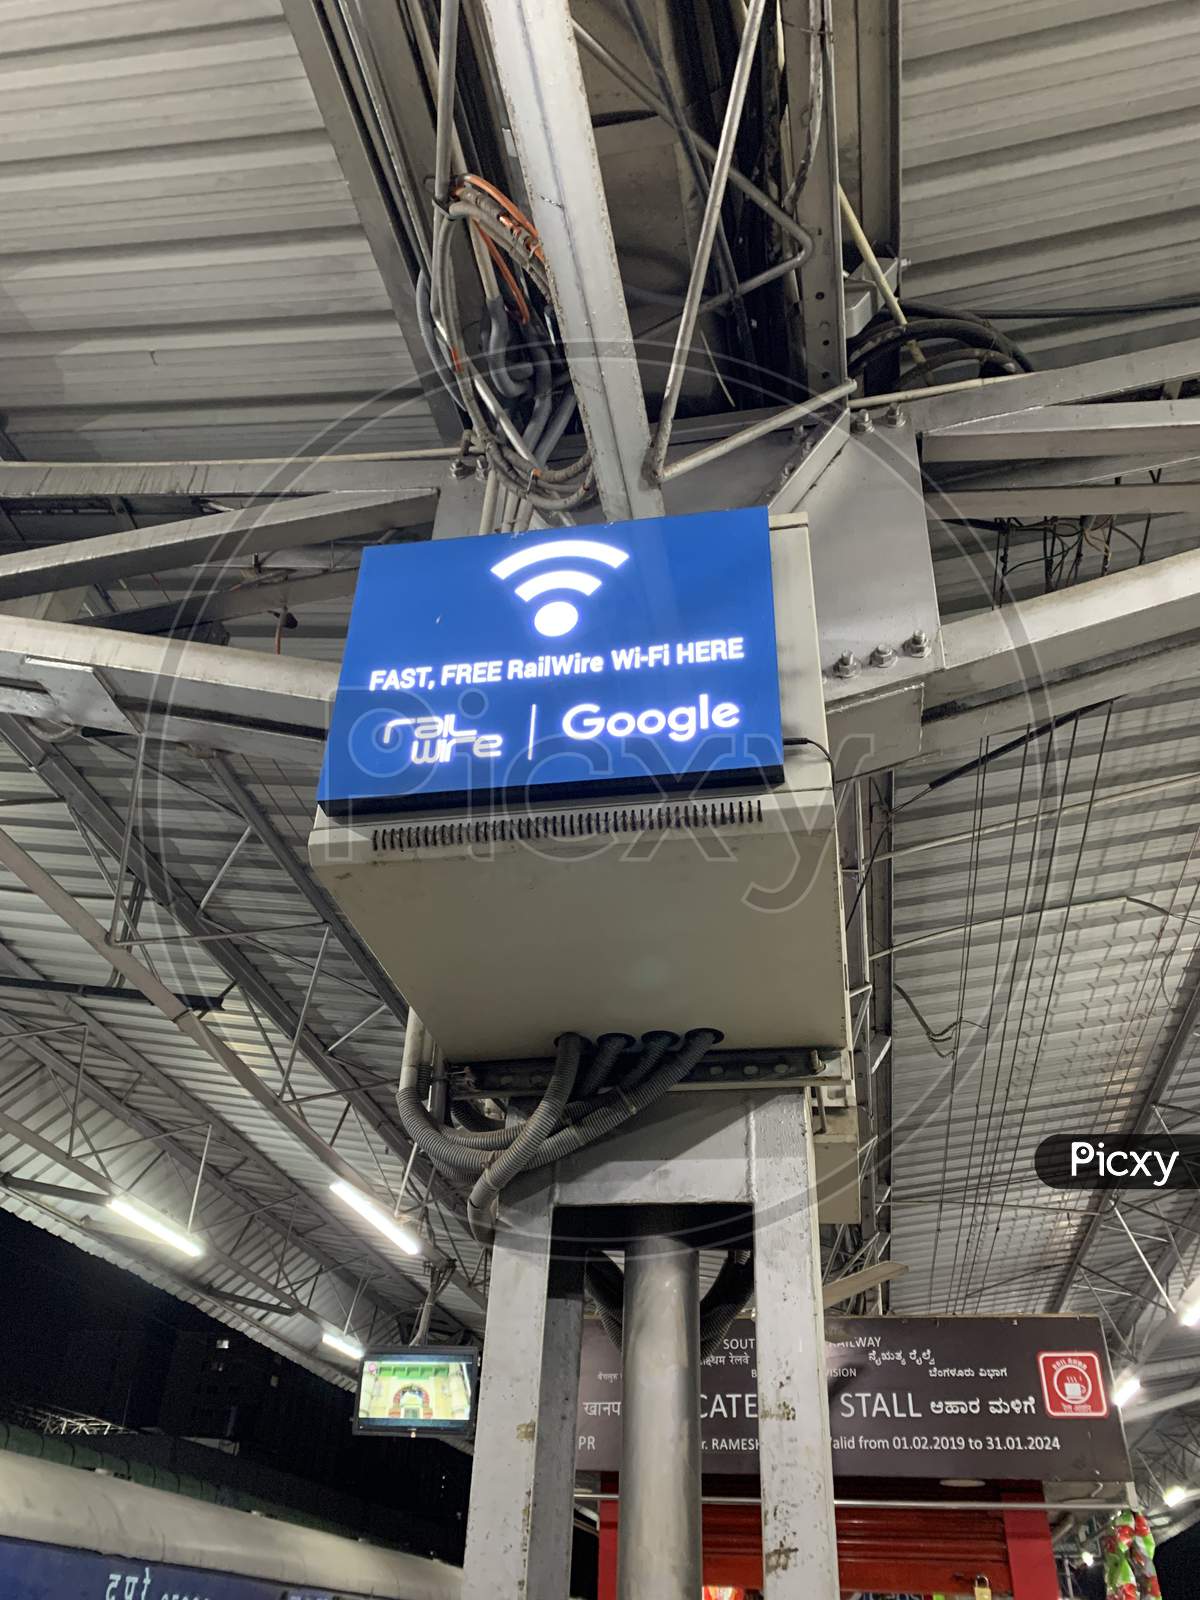 Rail wire Google wifi